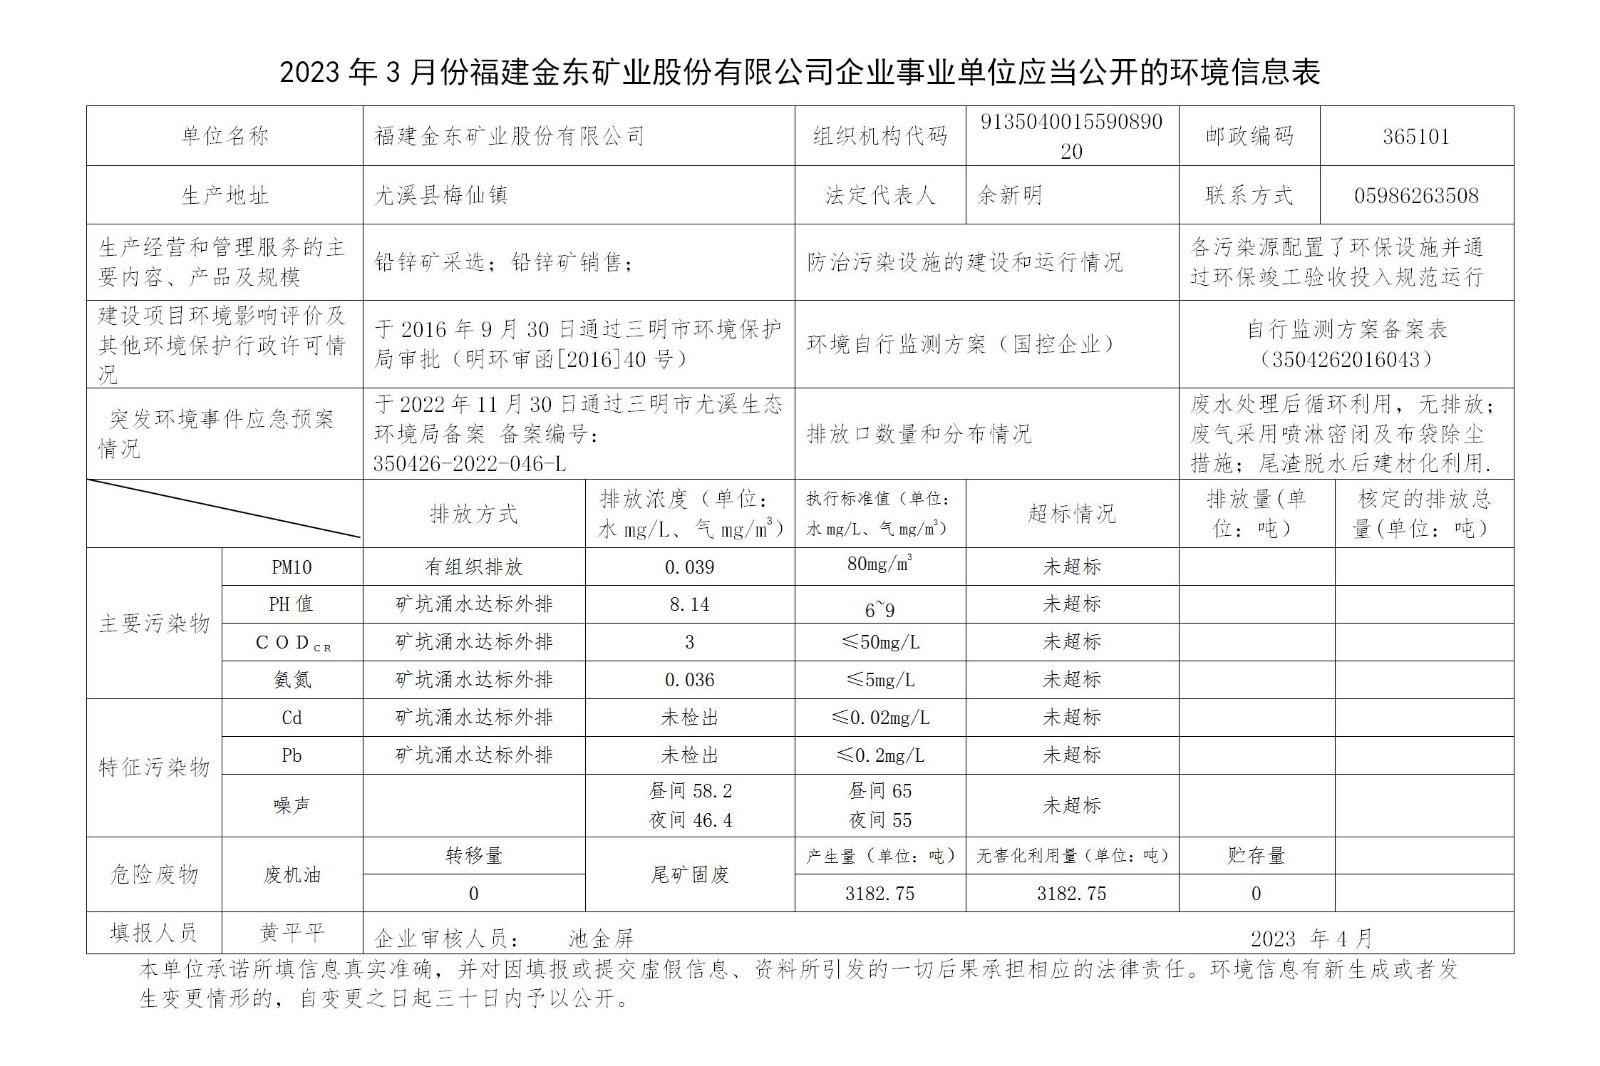 2023年3月份IM电竞「中国」官方网站企业事业单位应当公开的环境信息表_01.jpg